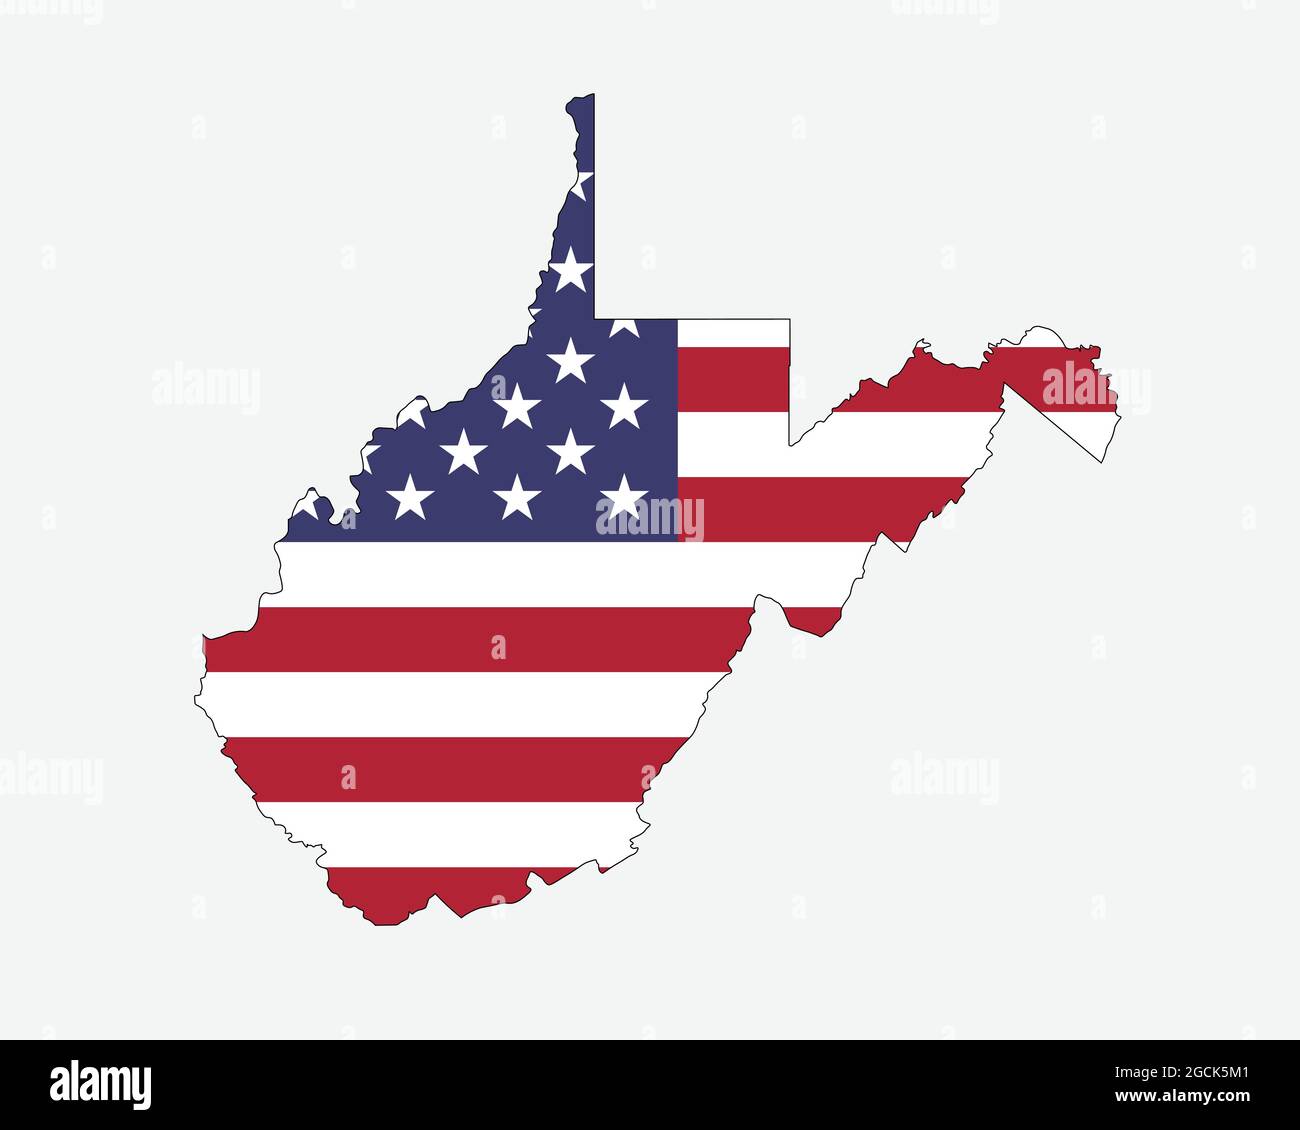 West Virginia Mappa sulla bandiera americana. WV, mappa dello stato degli Stati Uniti sulla bandiera degli Stati Uniti. Icona Clipart grafica vettoriale EPS Illustrazione Vettoriale